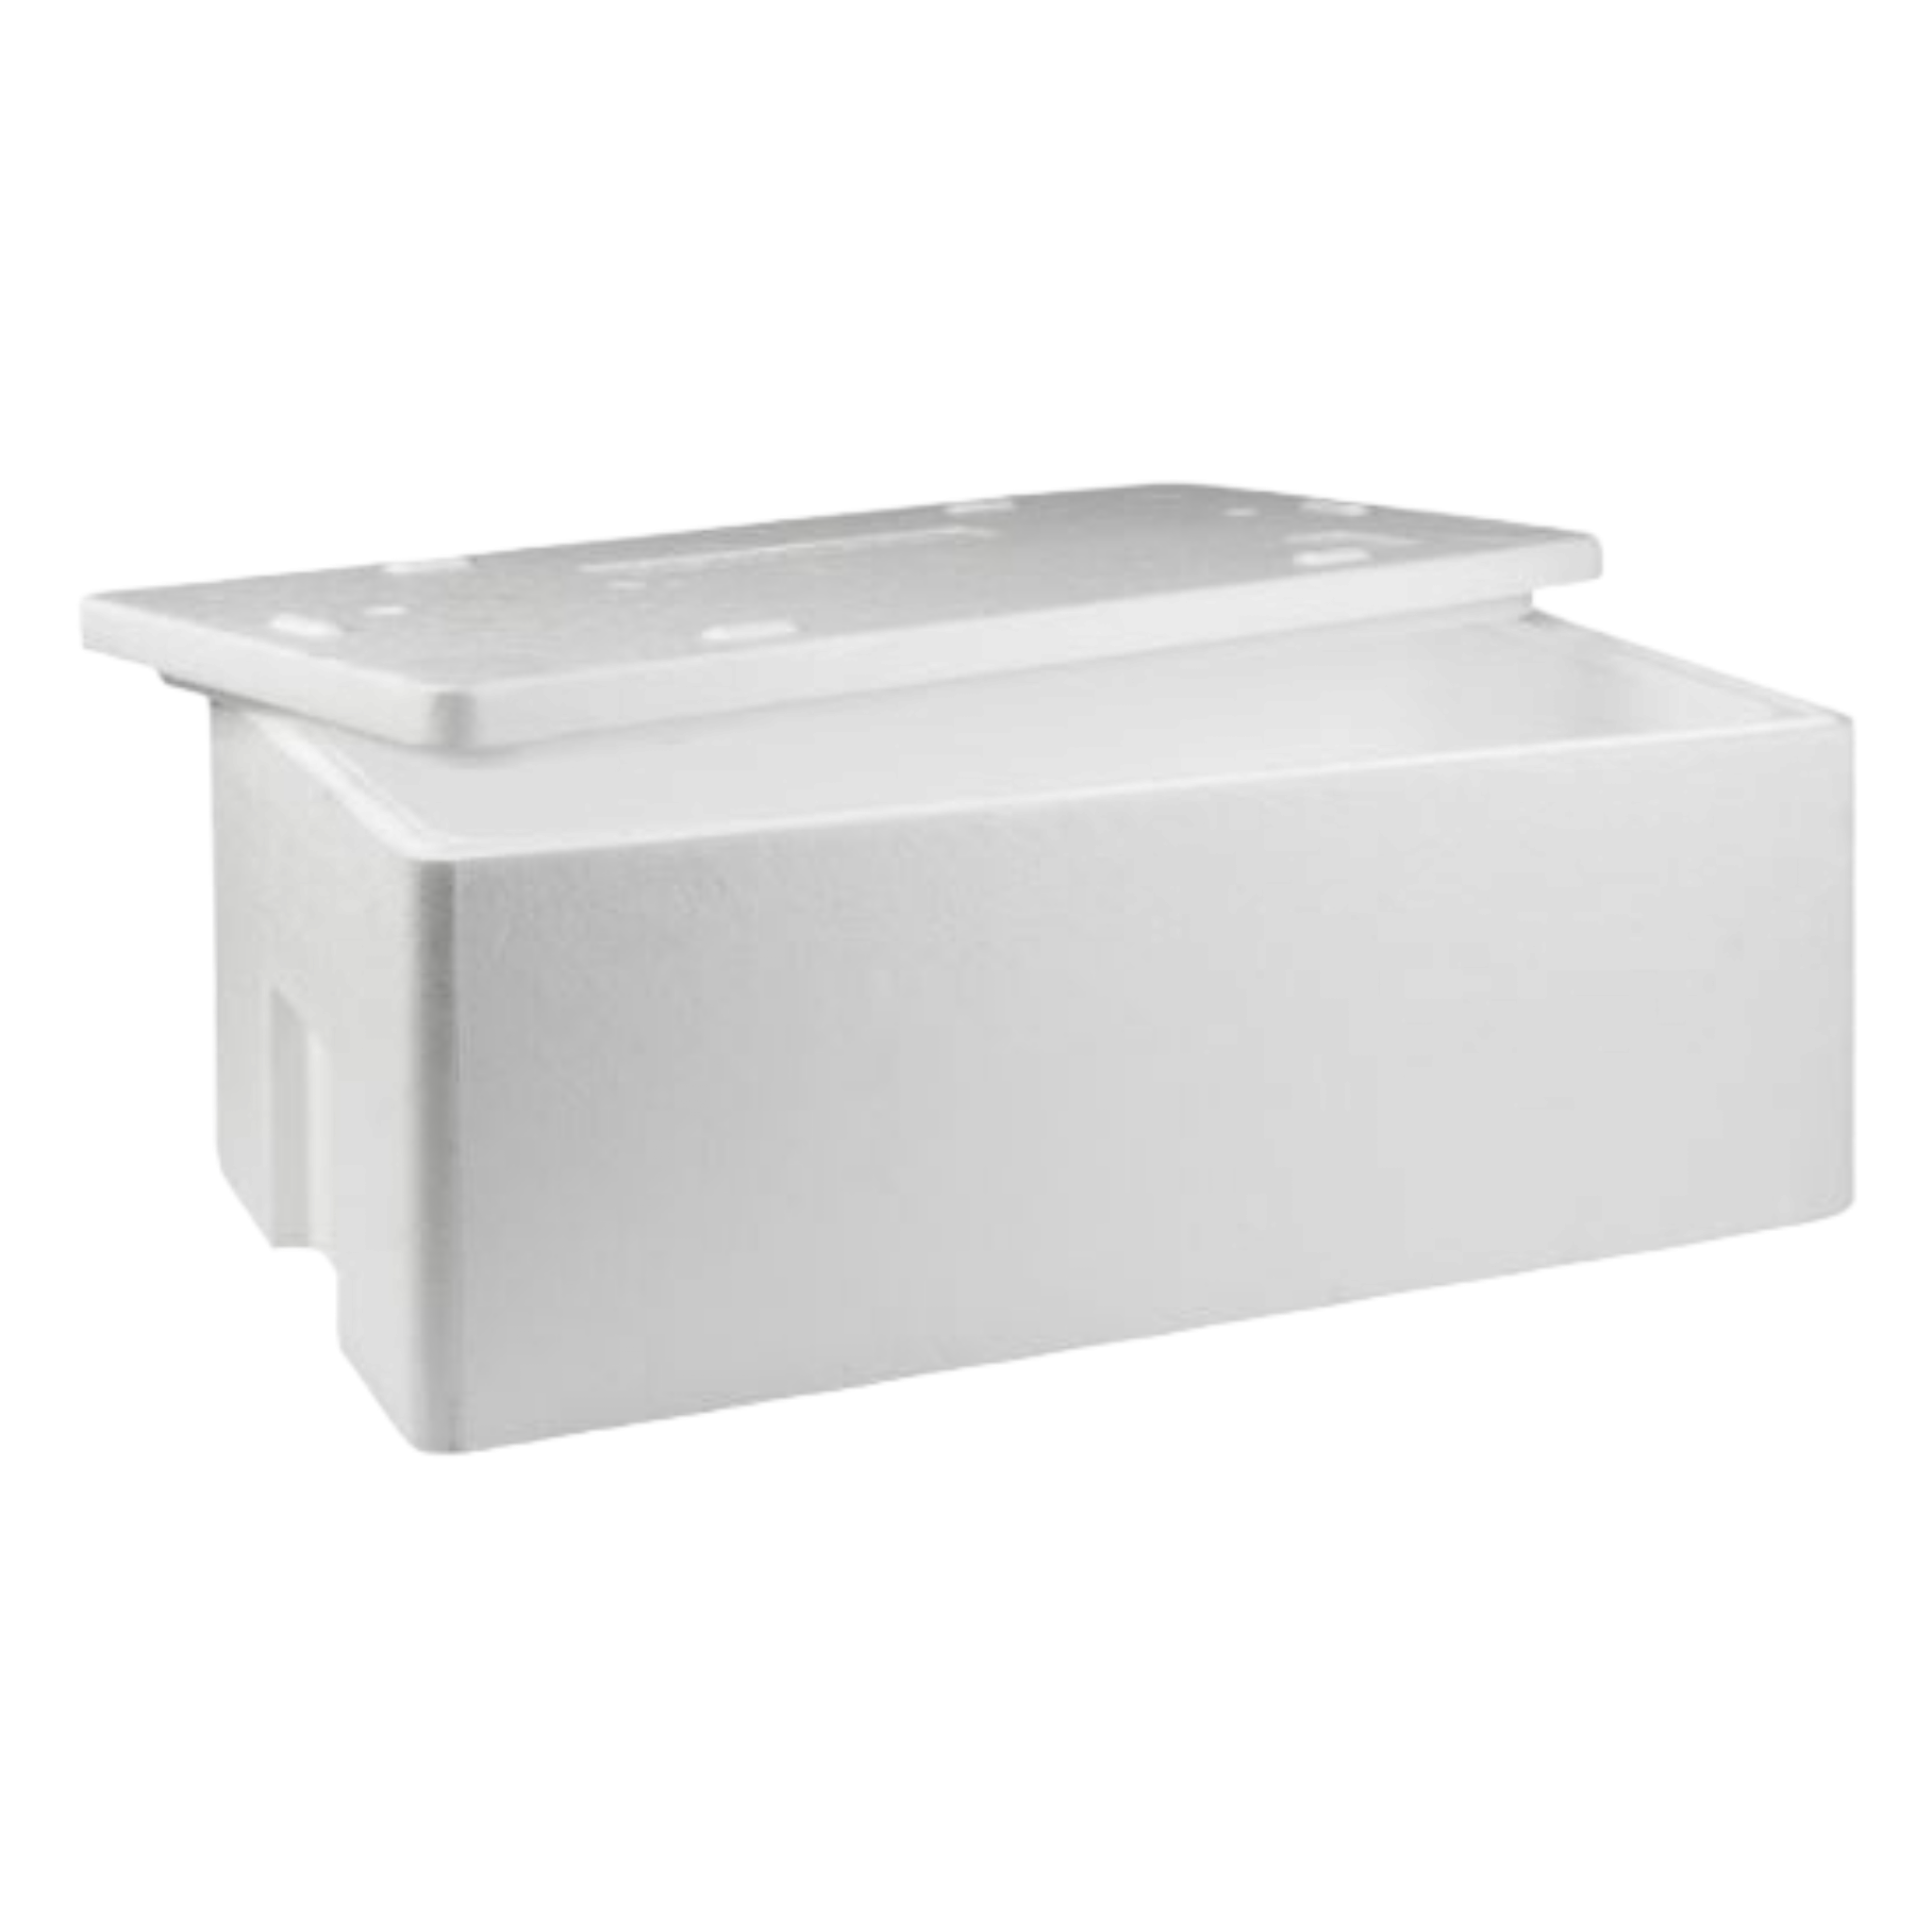 Polystyrene Cooler Box 30kg Thermal Storage Box